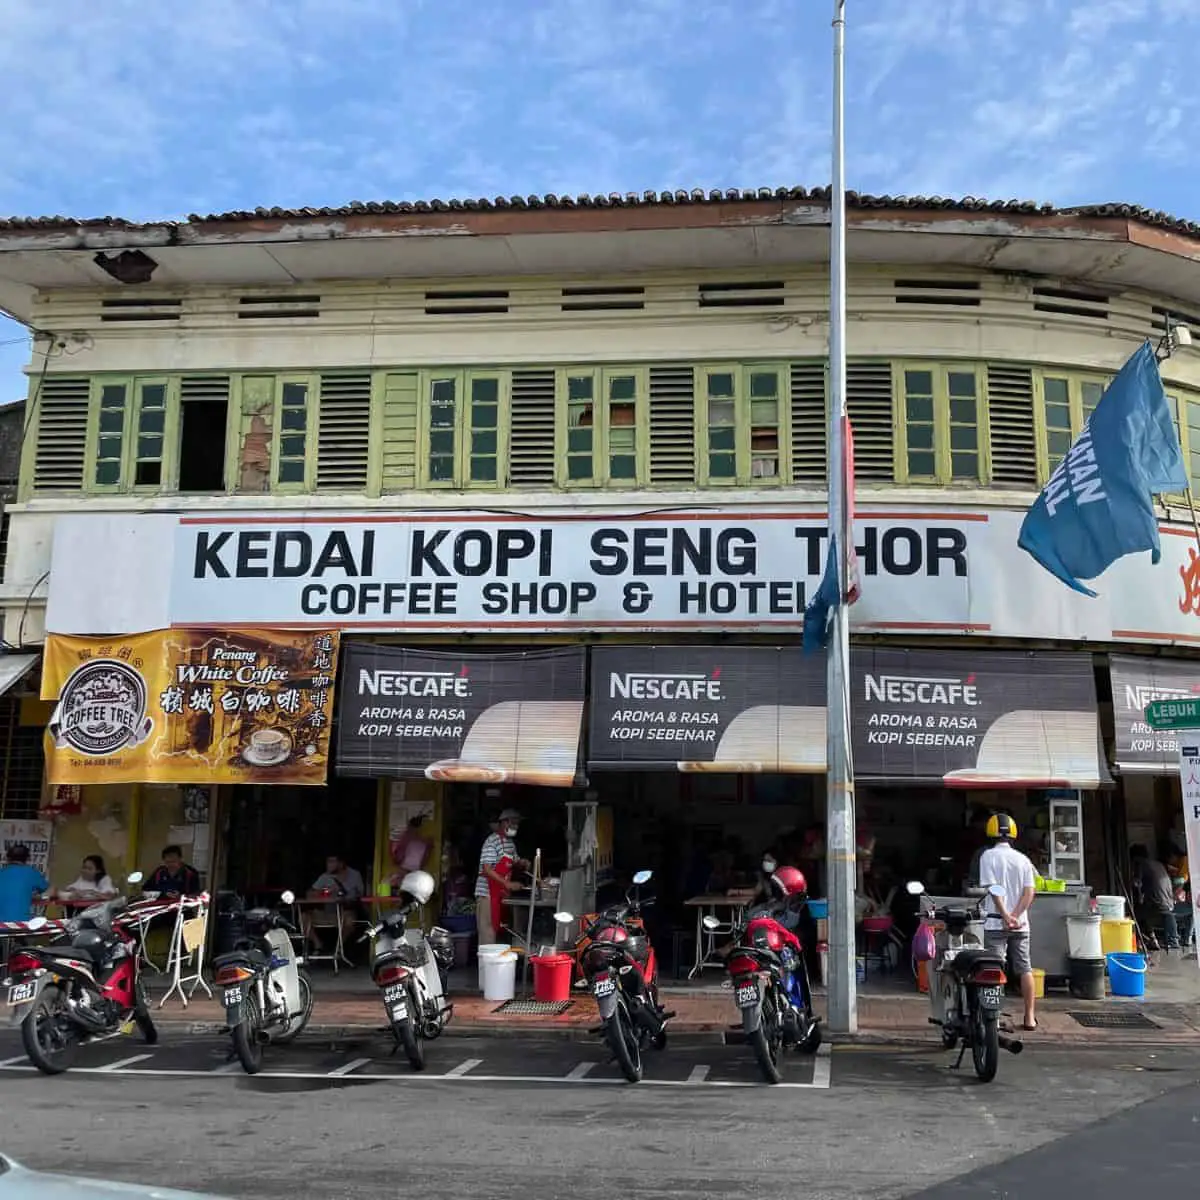 Kedai Kopi Seng Thor storefront